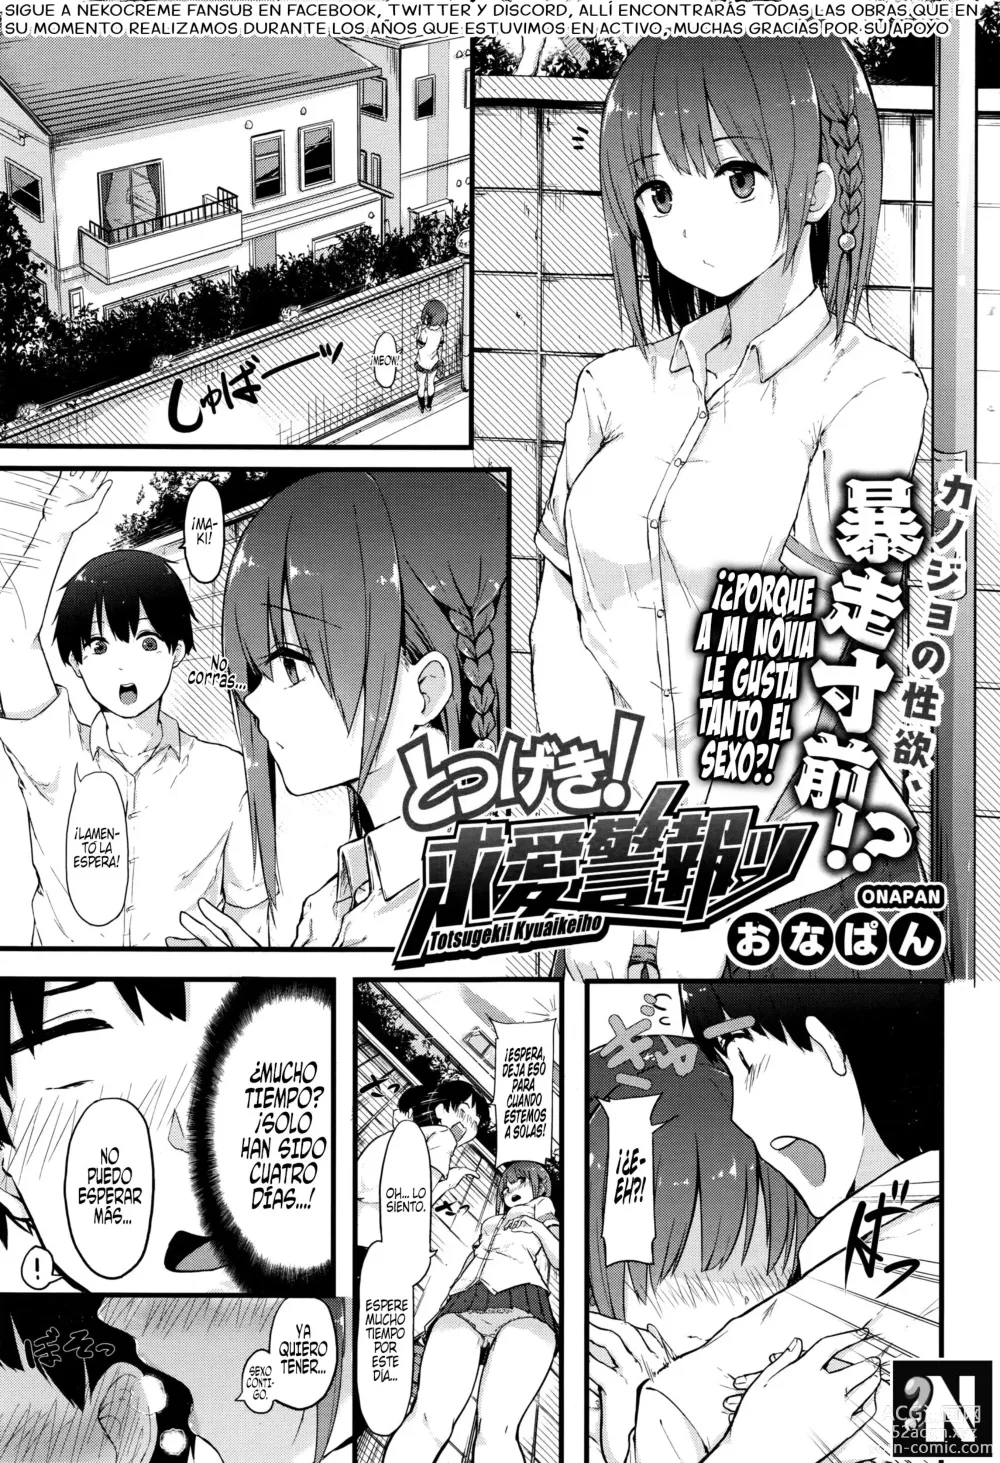 Page 1 of manga ¡Ataqué! Alarma Anti Cortejo